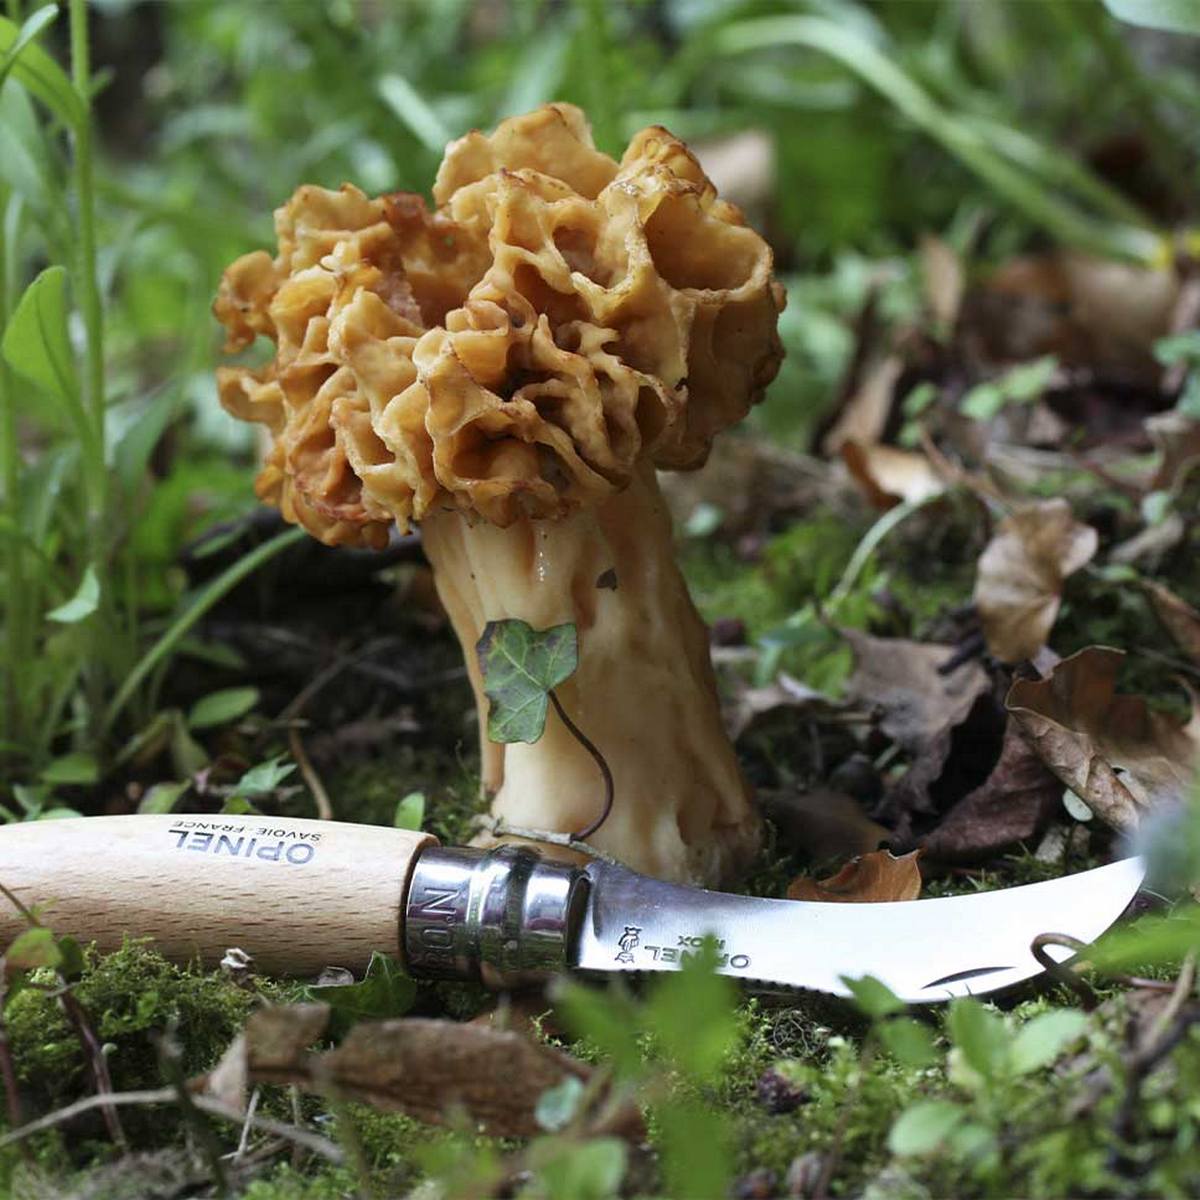 opinel couteau numero à champignon et son etui une idee cadeau chez ugo et lea (7)